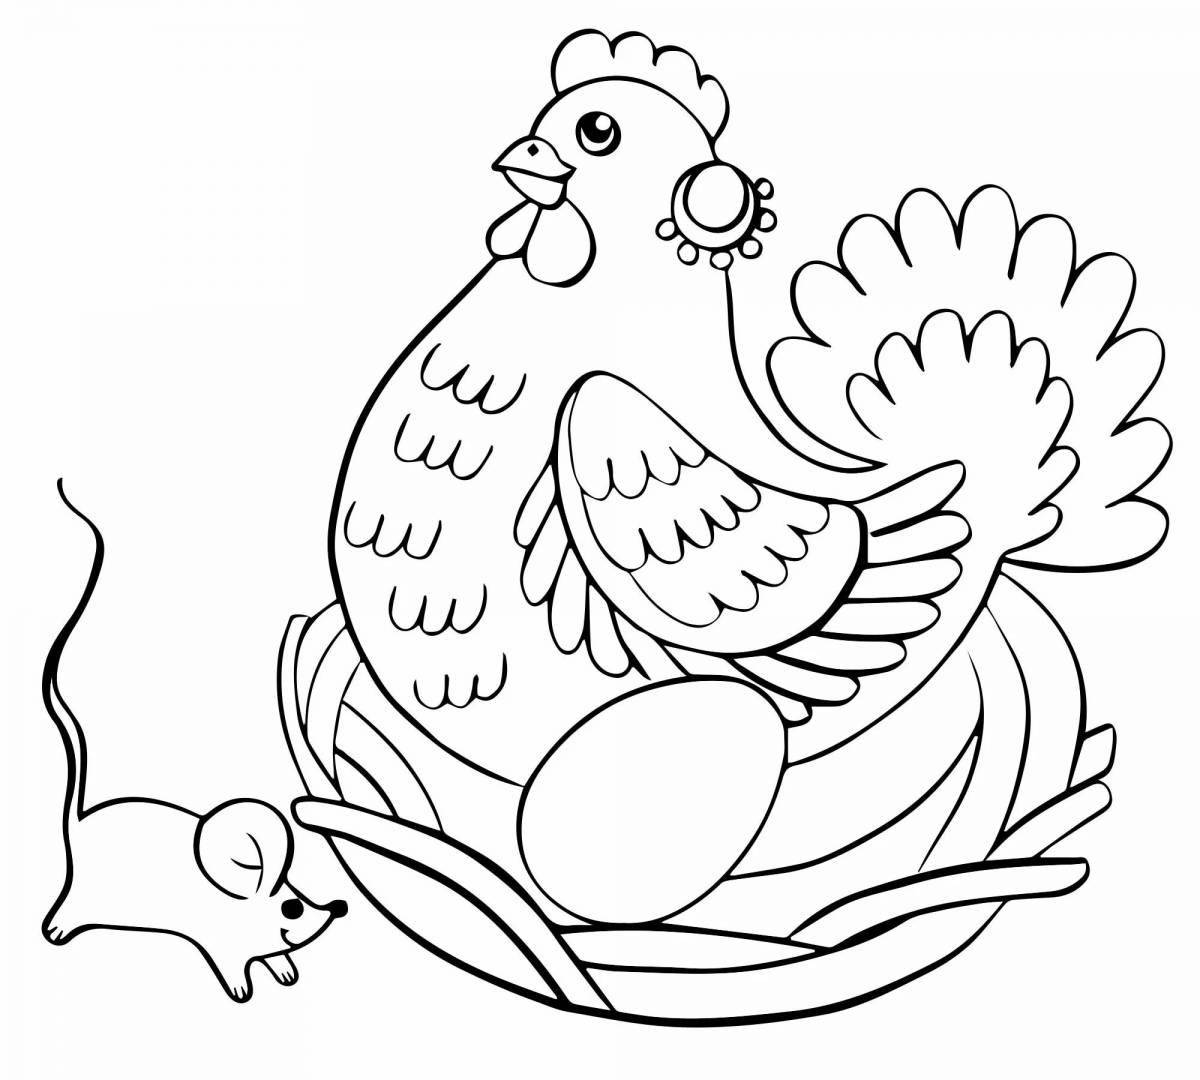 Увлекательная раскраска цыпленок ряба для дошкольников 2-3 лет